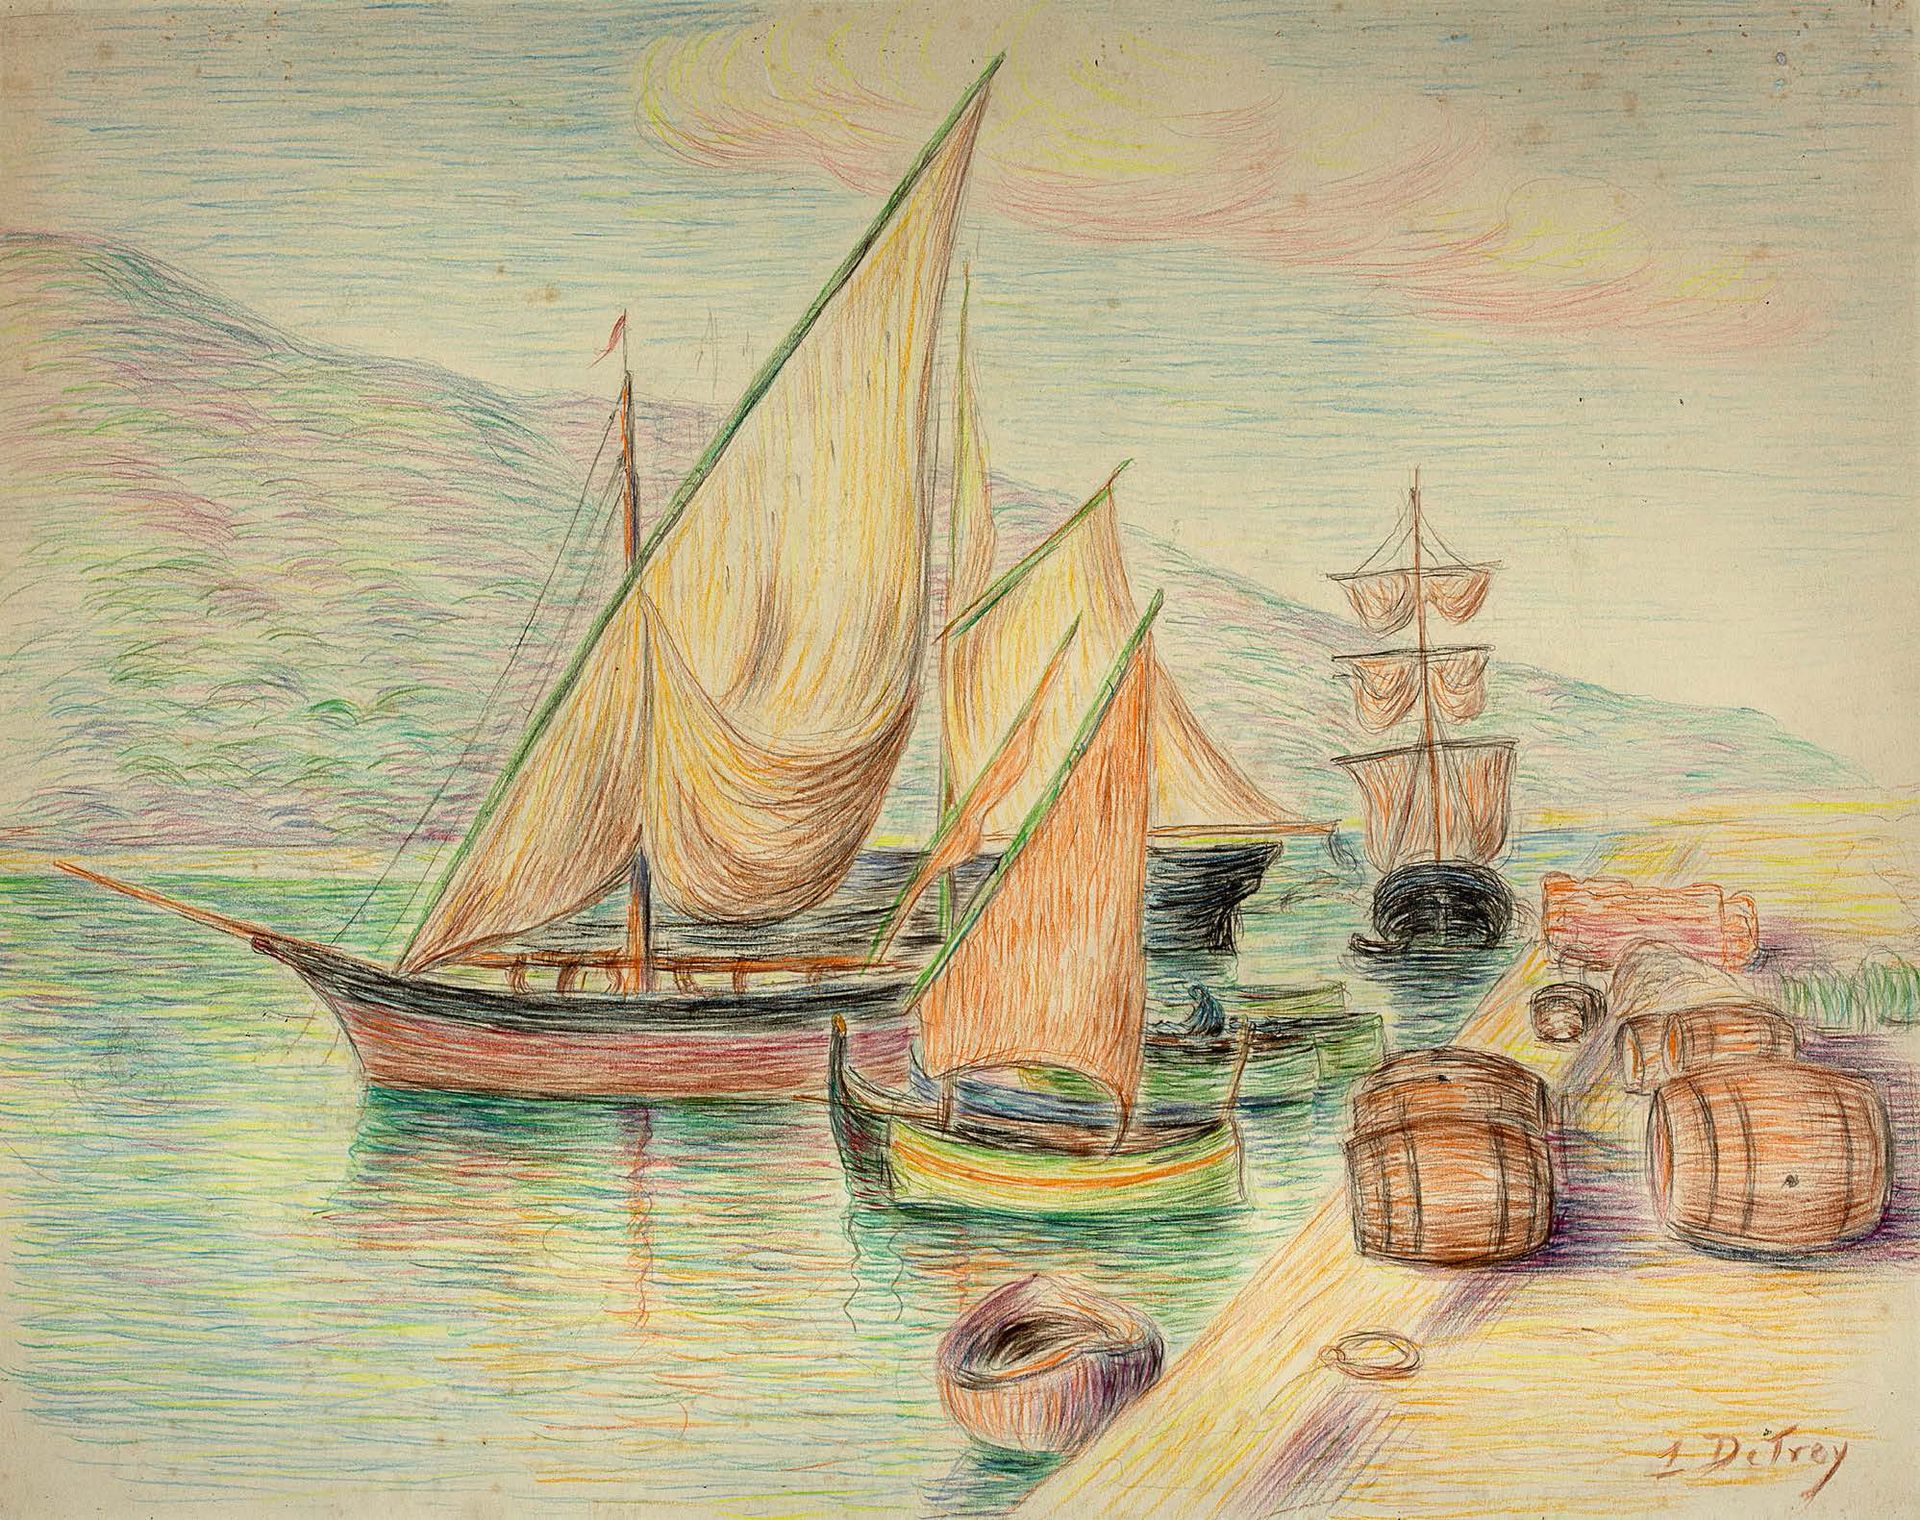 Léon DETROY (1857 - 1955) 
En el embarcadero

Lápices de colores sobre papel

Fi&hellip;